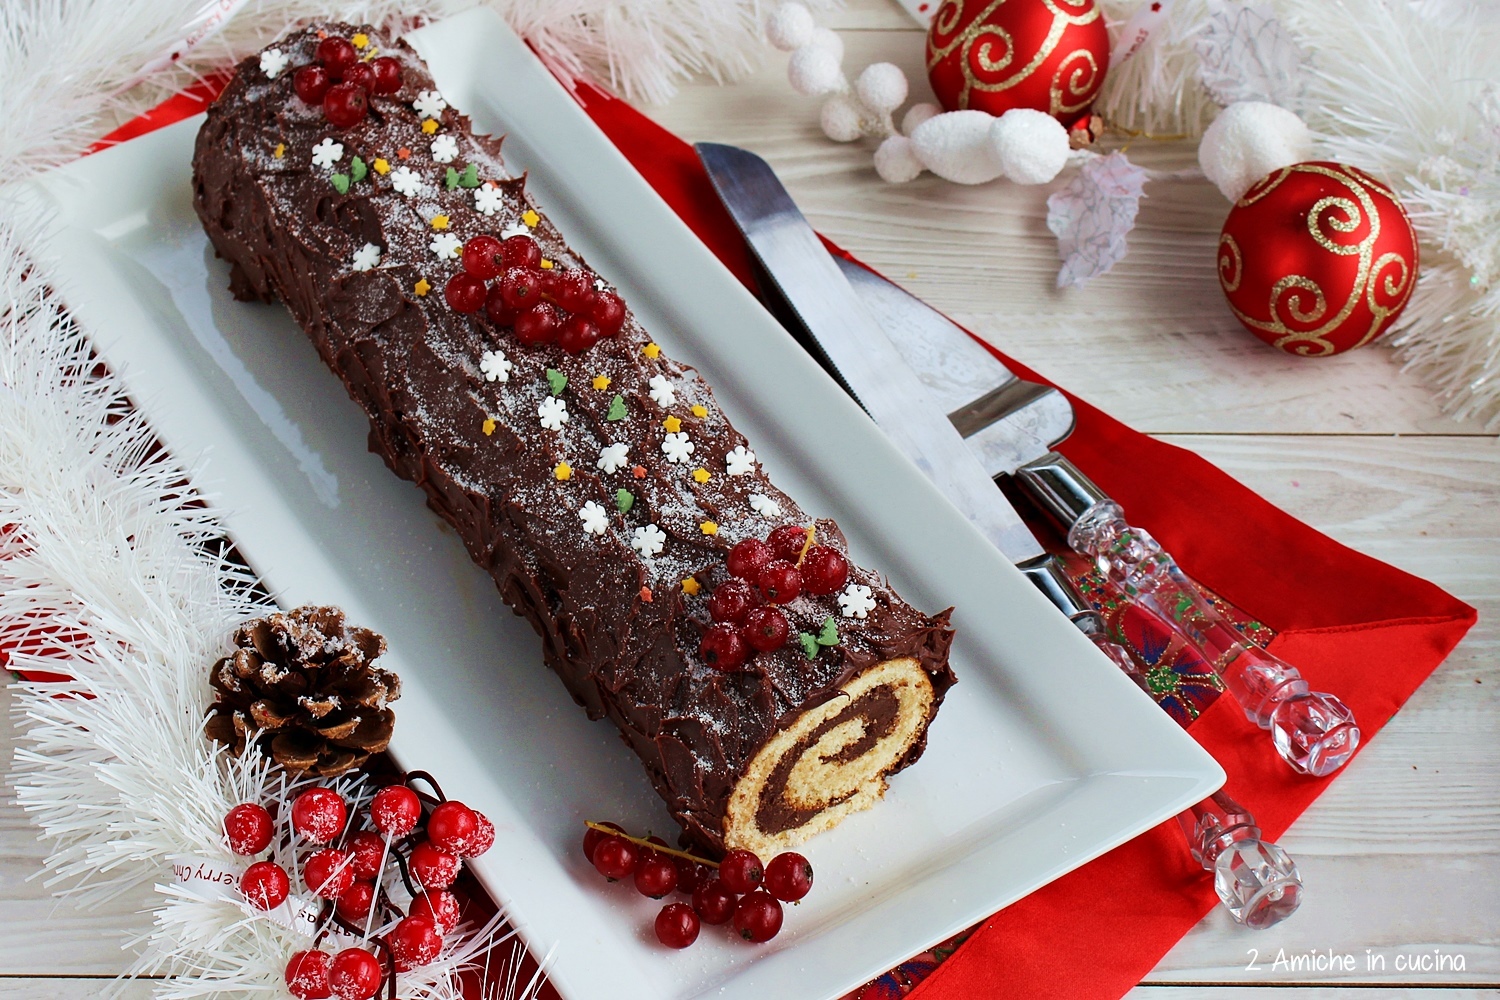 Tronchetto Di Natale 2.Tronchetto Al Cioccolato Buche De Noel 2 Amiche In Cucina